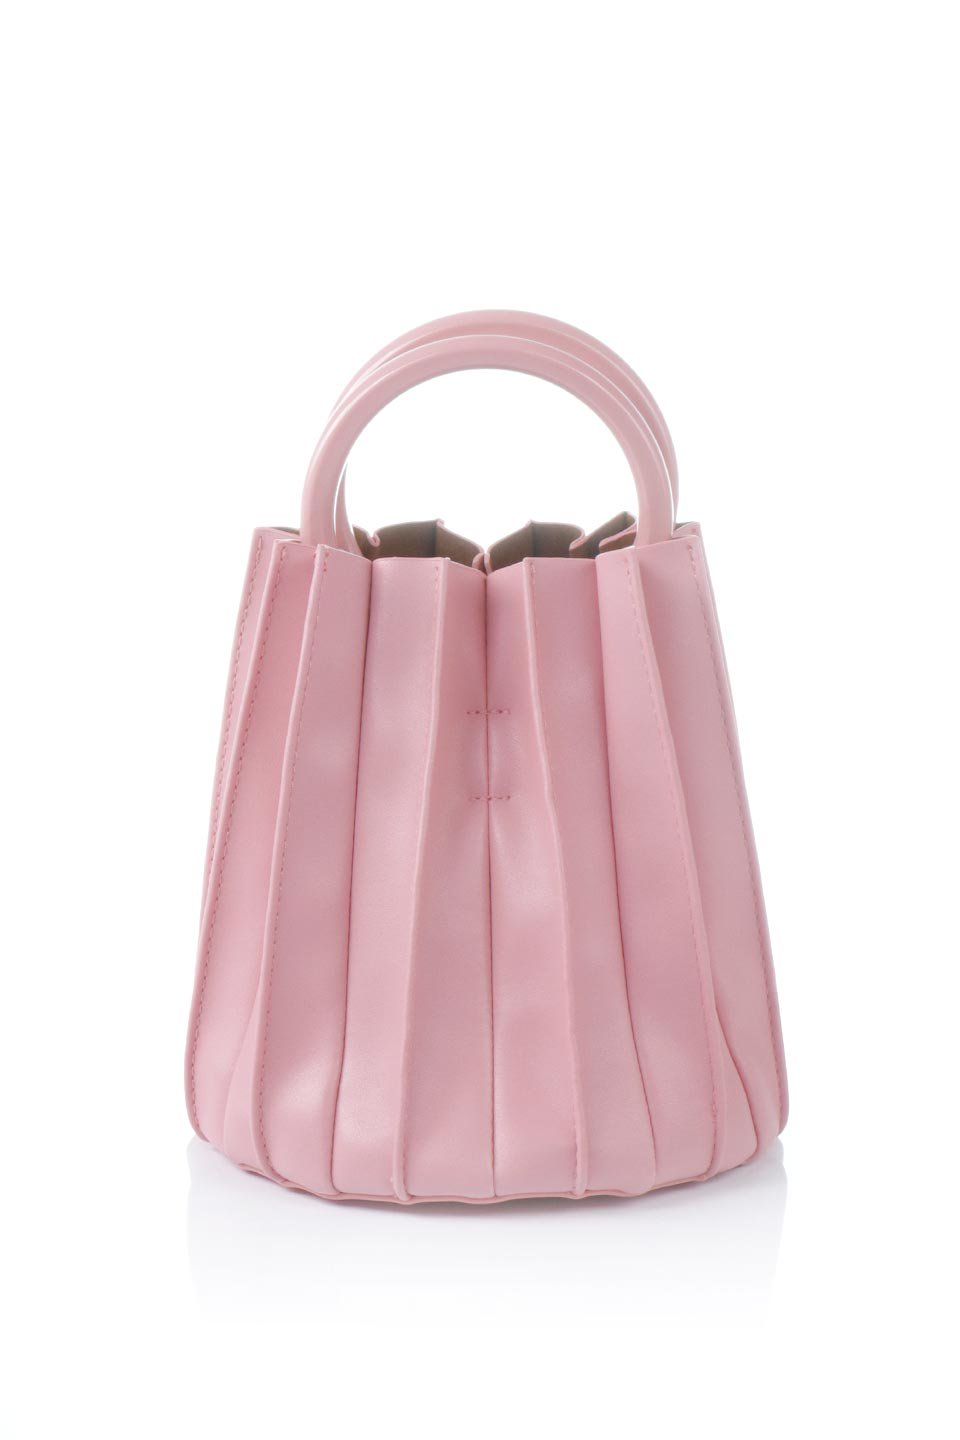 meliebiancoのLily(Pink)アコーディオンプリーツ・バケツバッグ/海外ファッション好きにオススメのインポートバッグとかばん、MelieBianco（メリービアンコ）のバッグやハンドバッグ。ビーガンレザーのアコーディオンプリーツが特徴のバケツ型バッグ。ハンドバッグとしてもストラップを付けてショルダーバッグとしても使用できます。